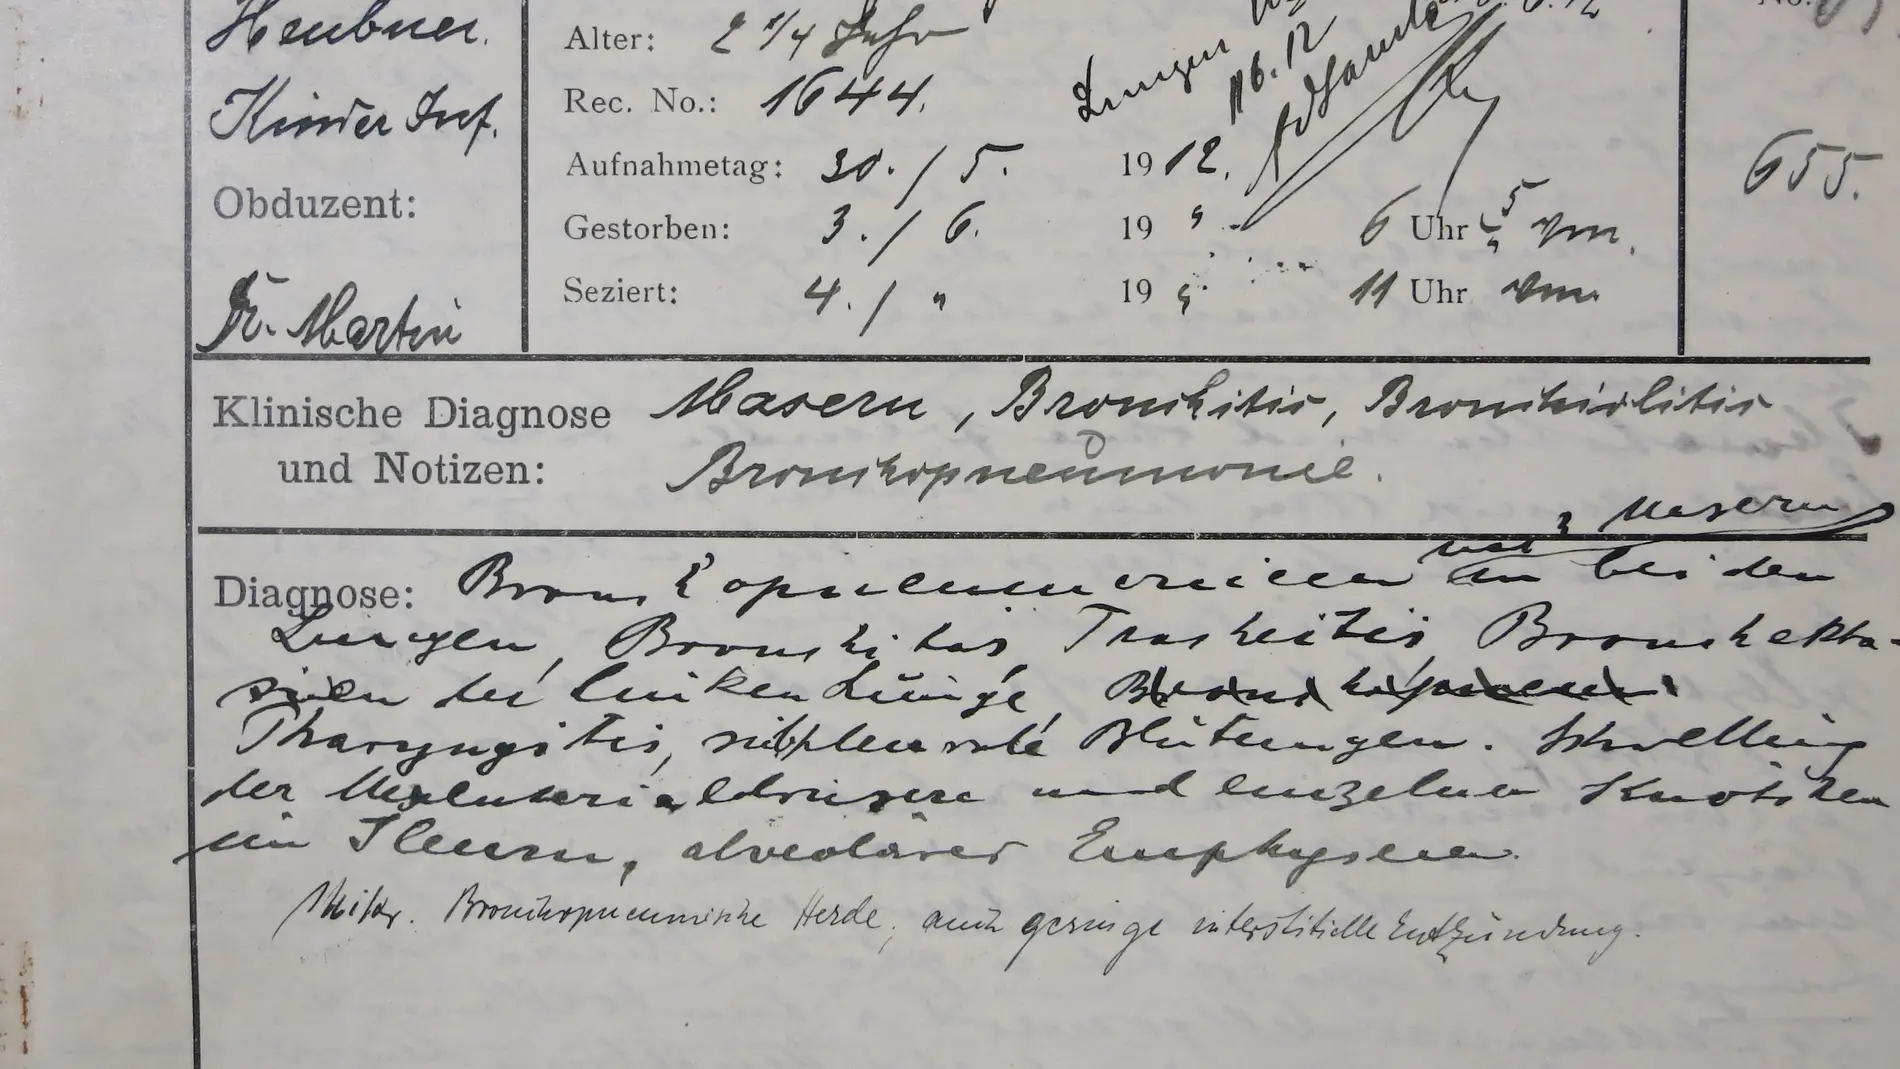 Informe de la autopsia del caso de sarampión de 1912